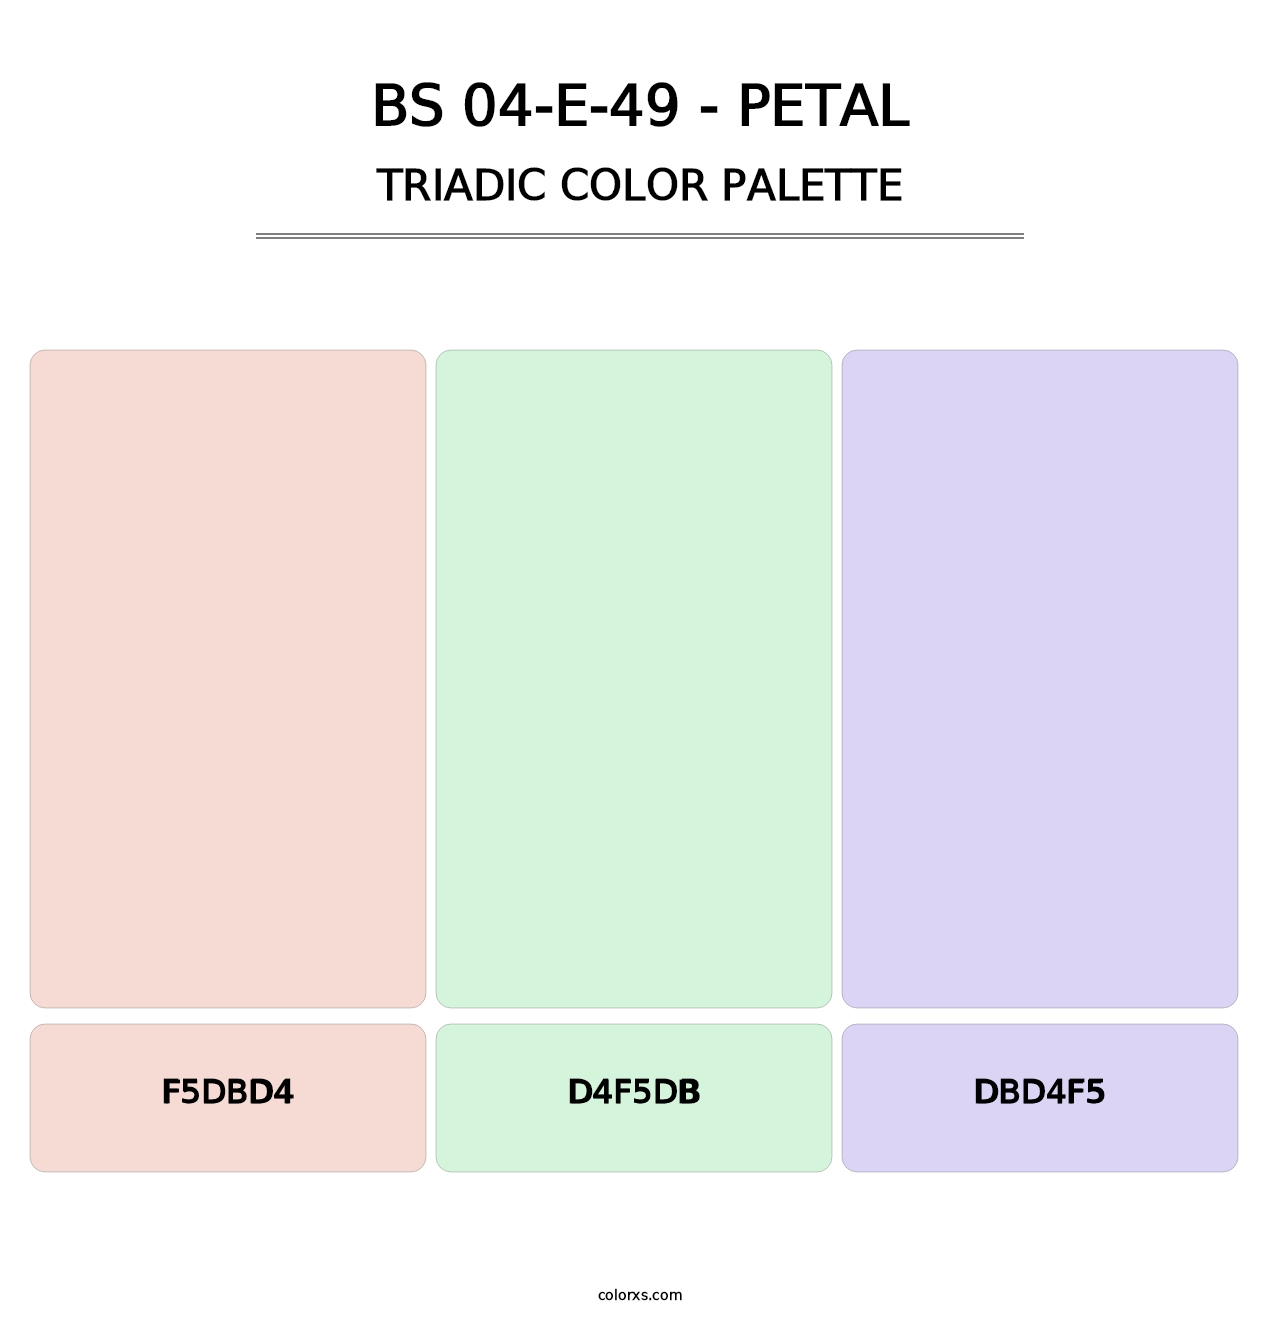 BS 04-E-49 - Petal - Triadic Color Palette